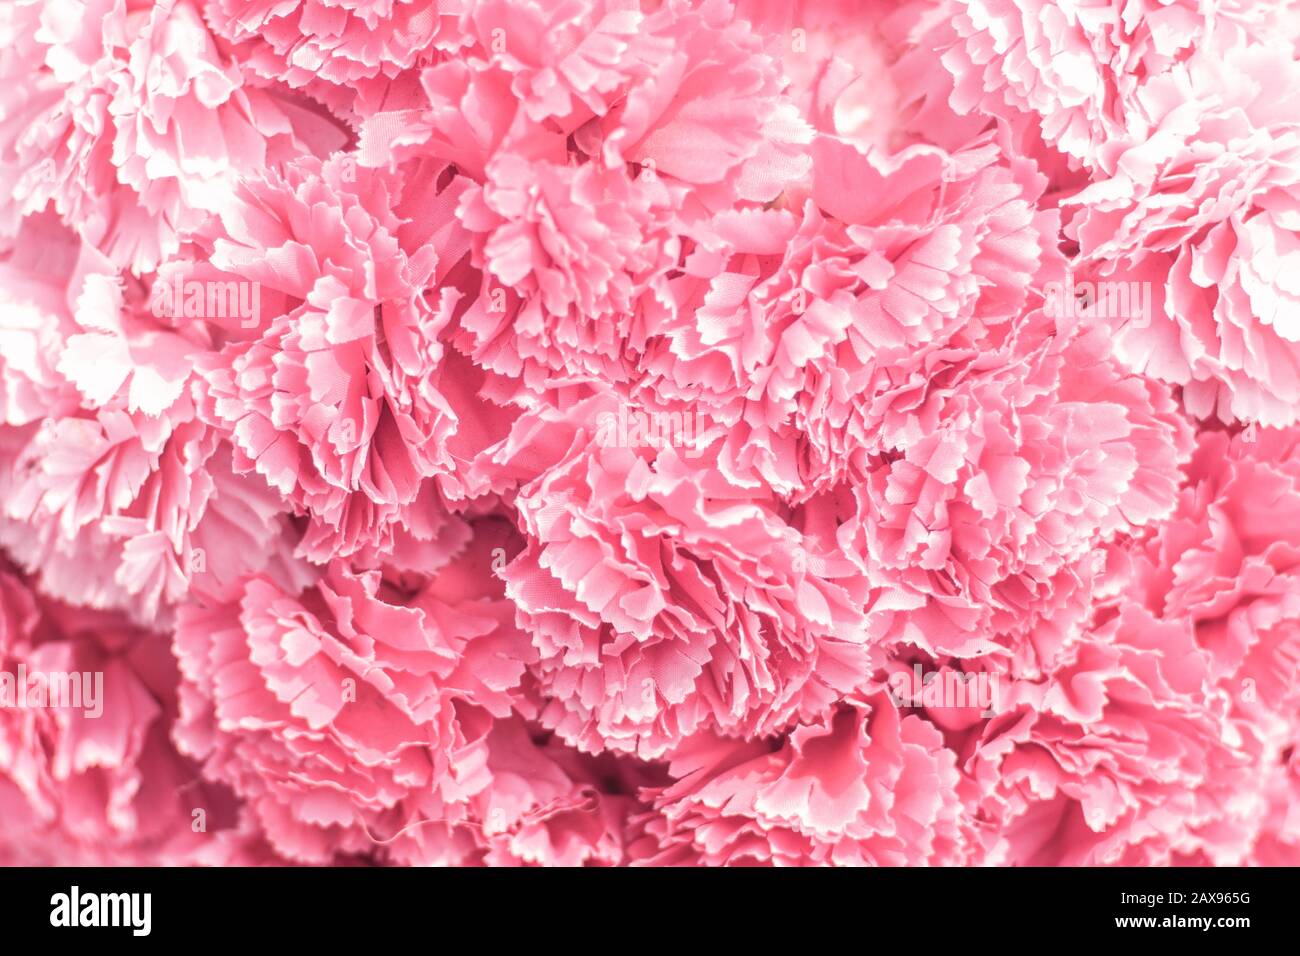 Selektiver Fokus Schöner Hintergrund mit Pink Flowers. Abstrakt weich süß-rosa Blumenhintergrund .Schöne rosafarbene Rosen Blumenblüten Blumenhintergrund d Stockfoto